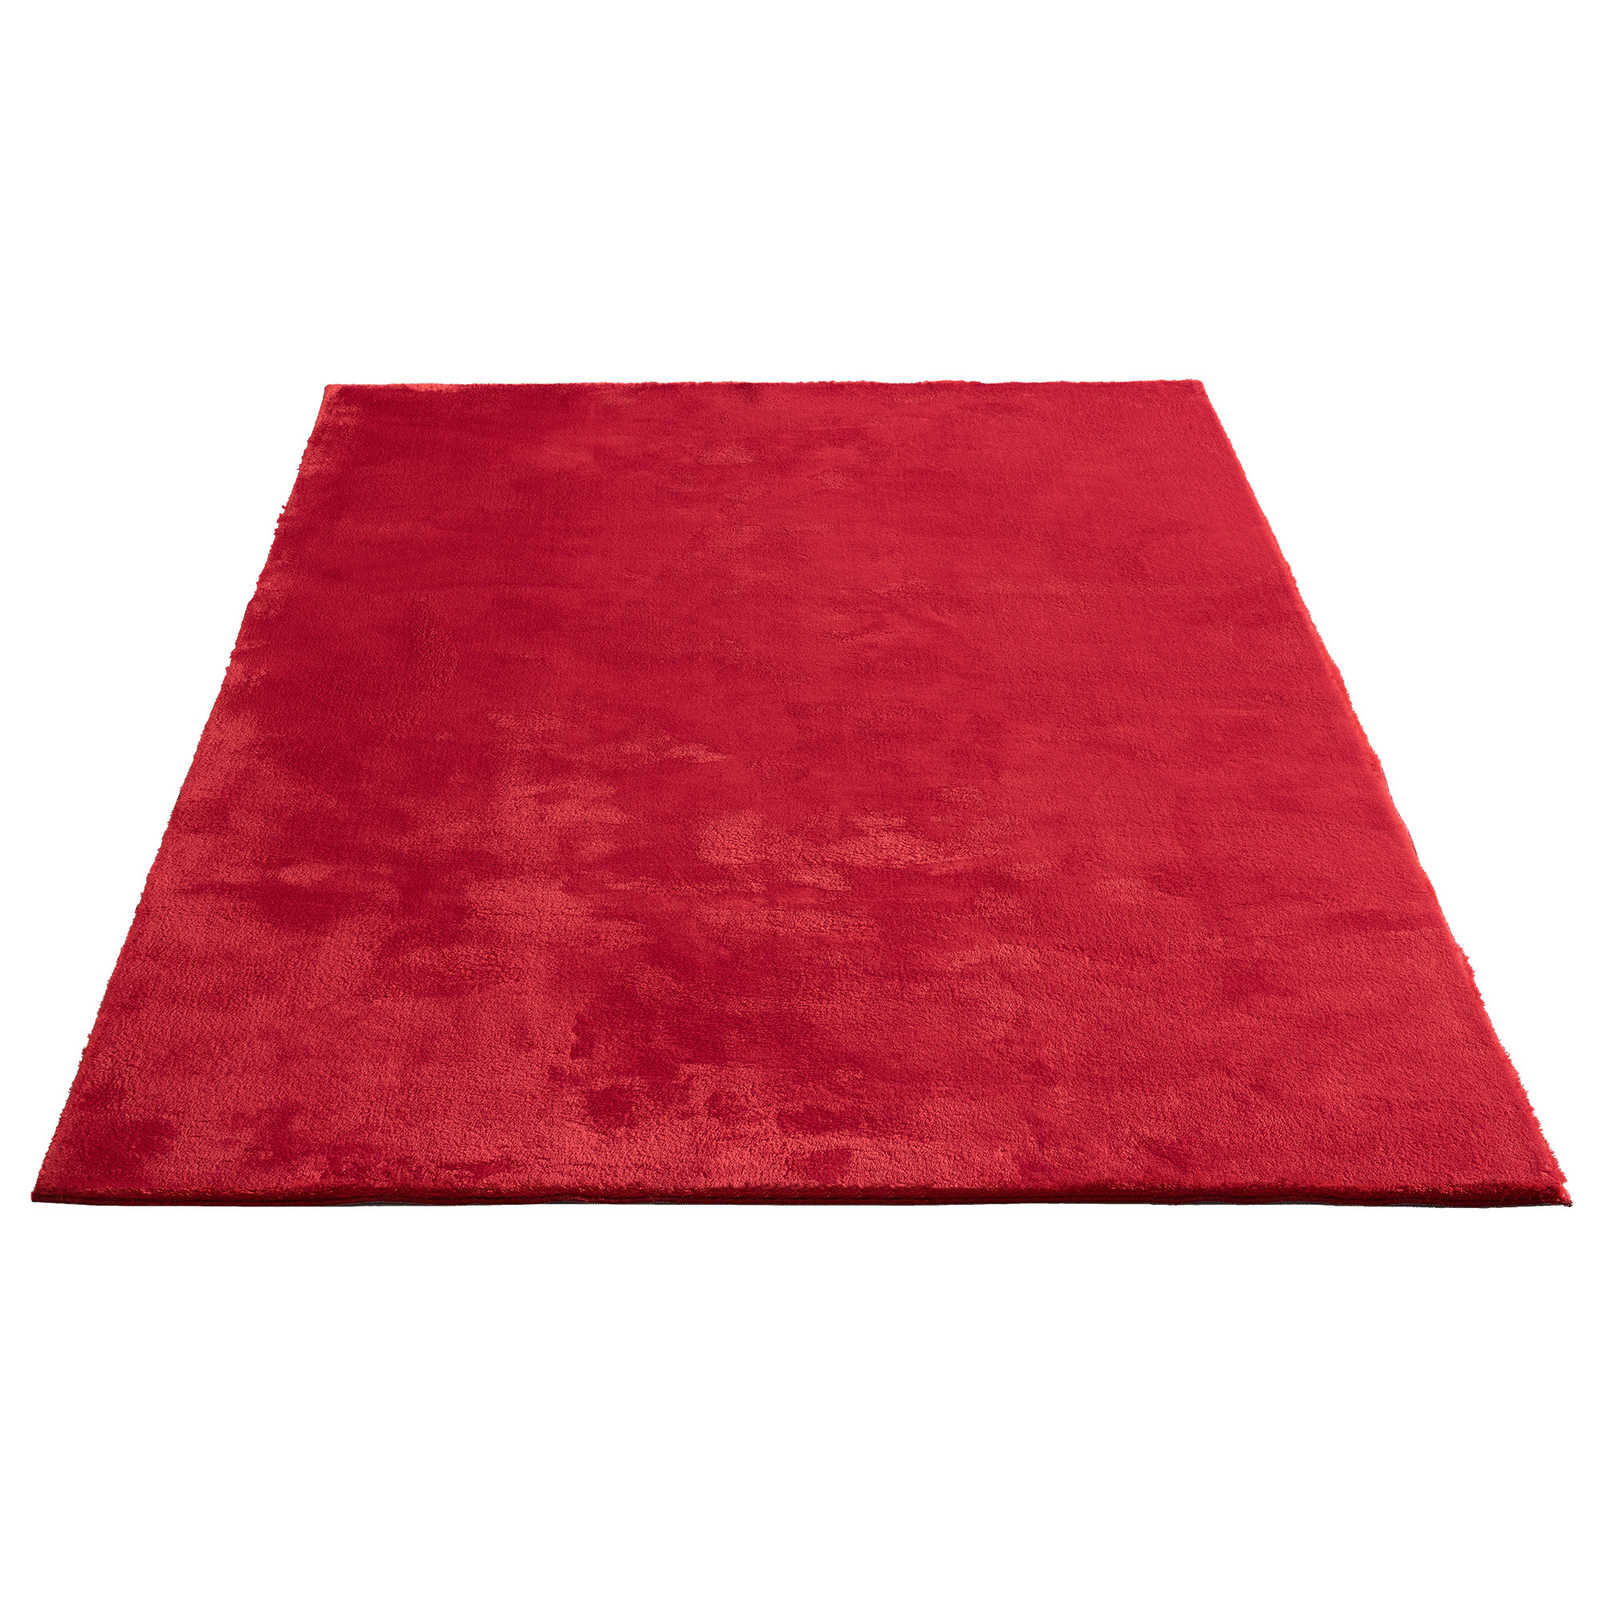 Besonders weicher Hochflor Teppich in Rot – 290 x 200 cm
